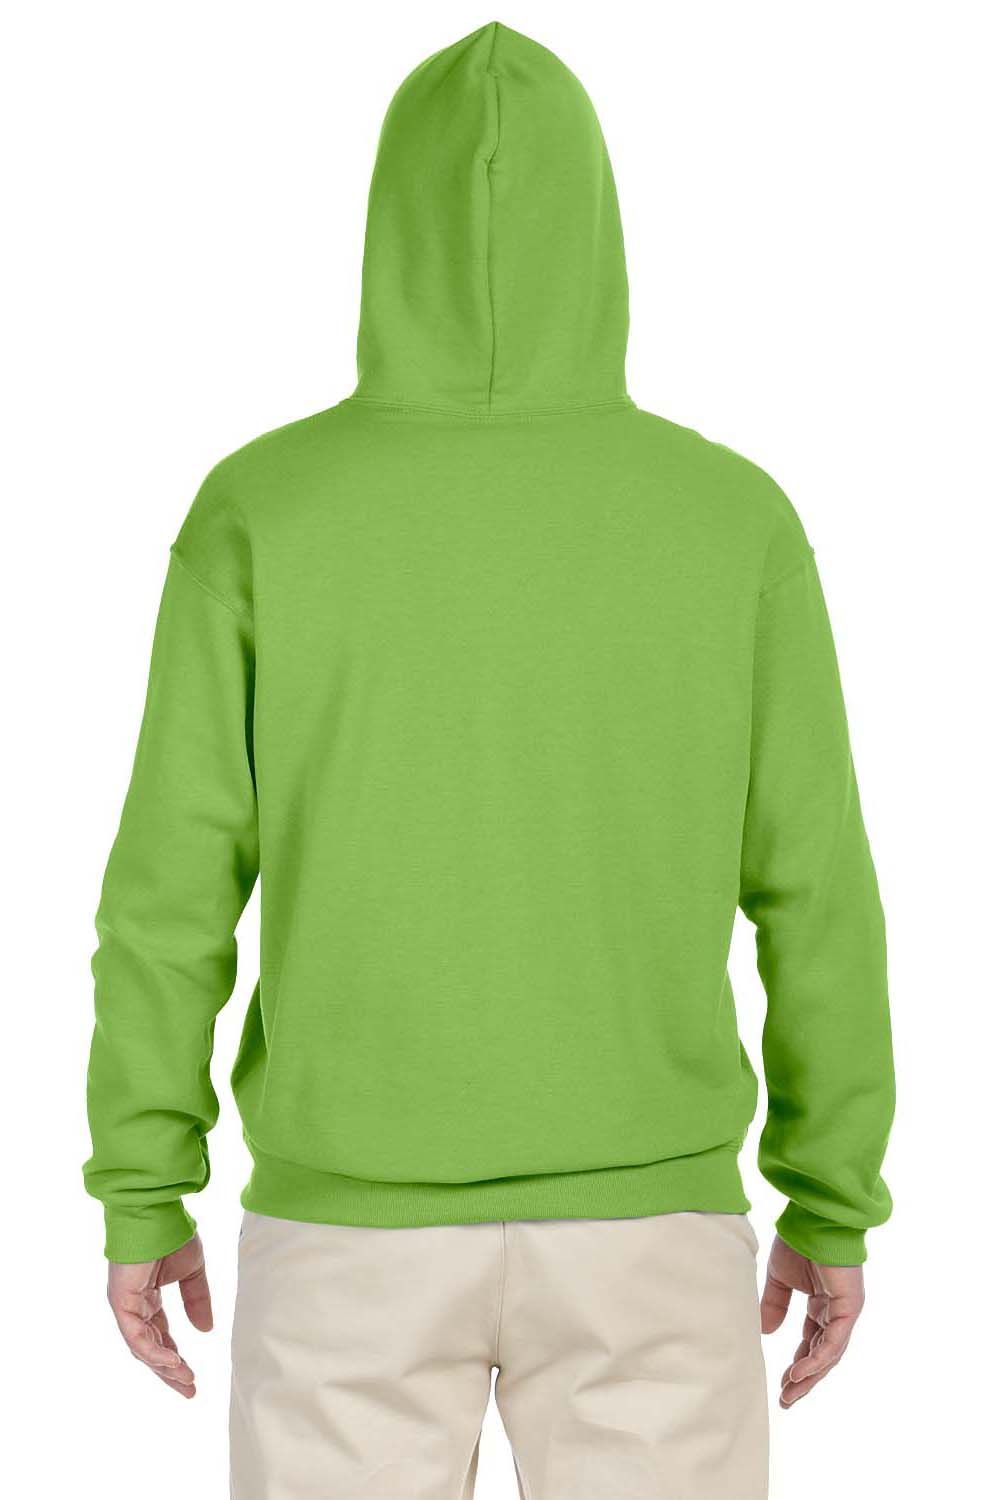 Jerzees 996 Mens NuBlend Fleece Hooded Sweatshirt Hoodie Kiwi Green Back